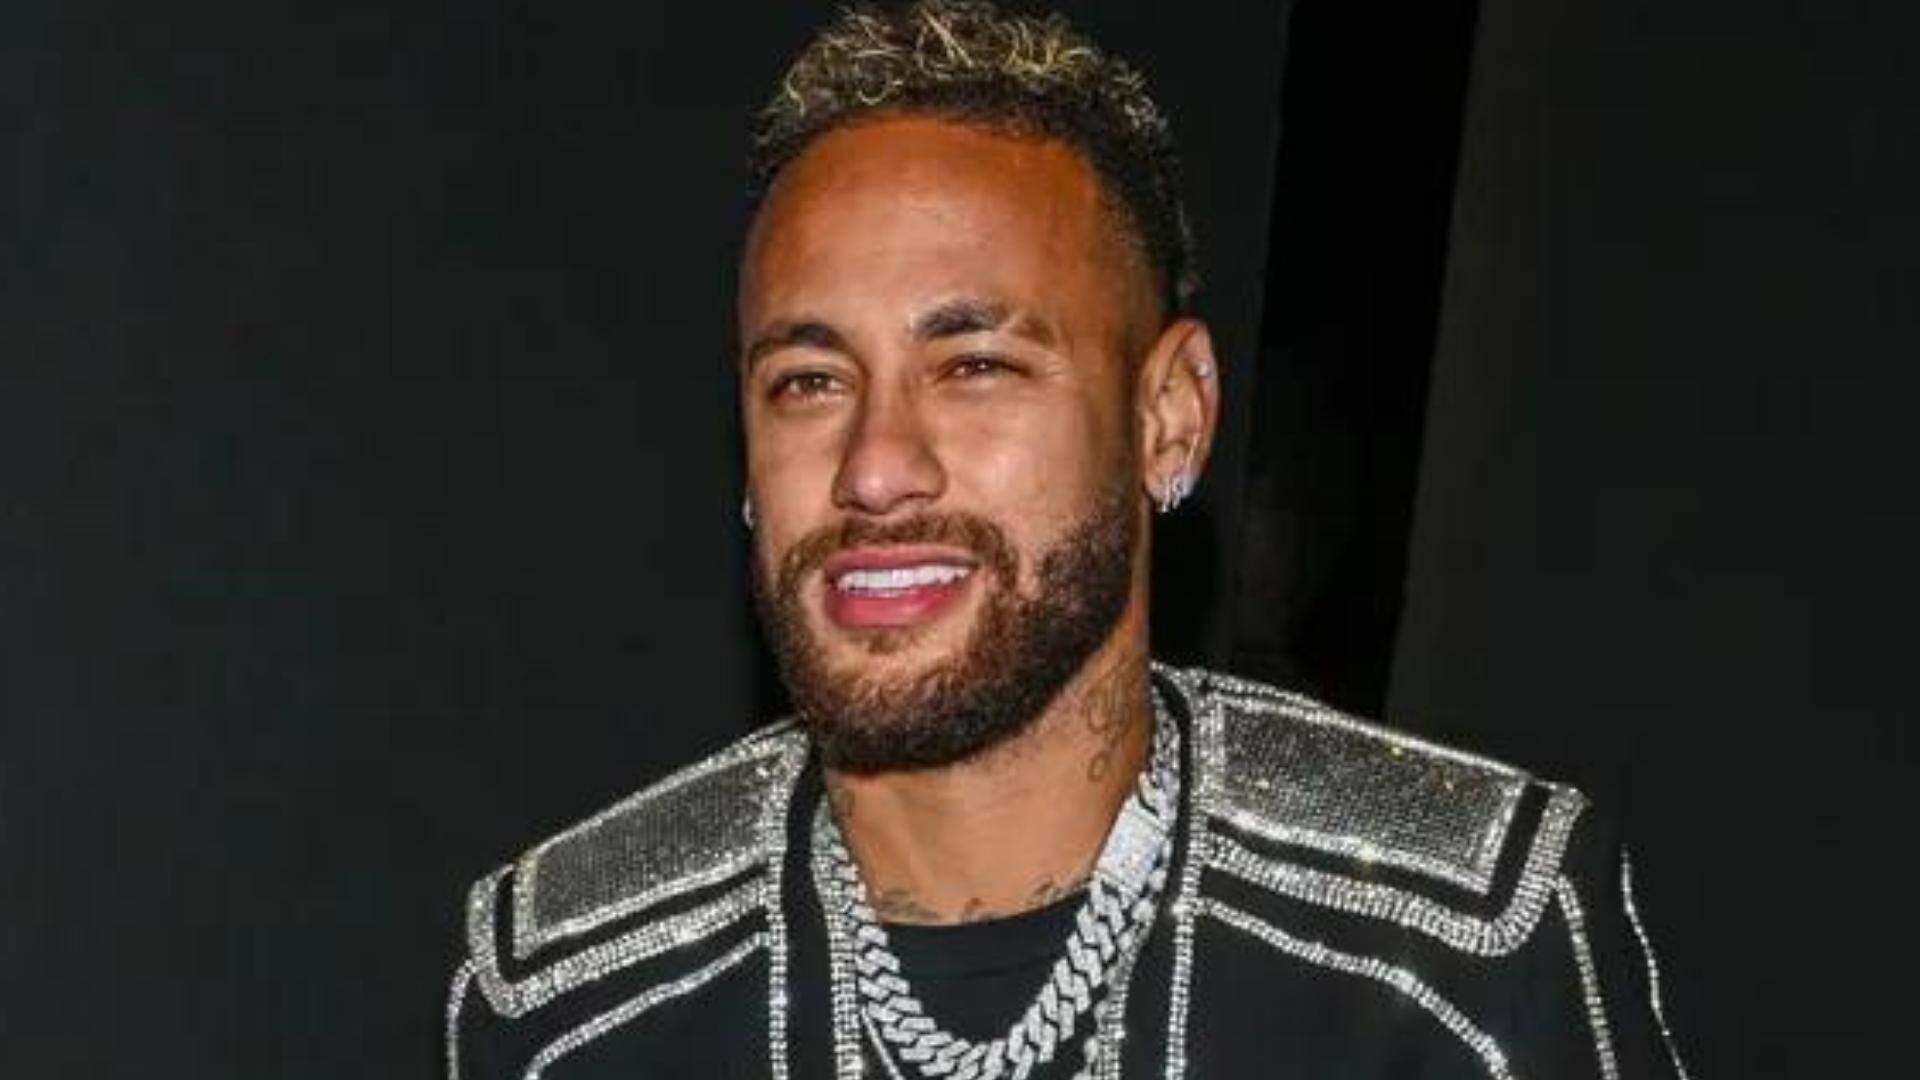 Tá podendo! Neymar é clicado com look milionário em Paris e choca web - Metropolitana FM